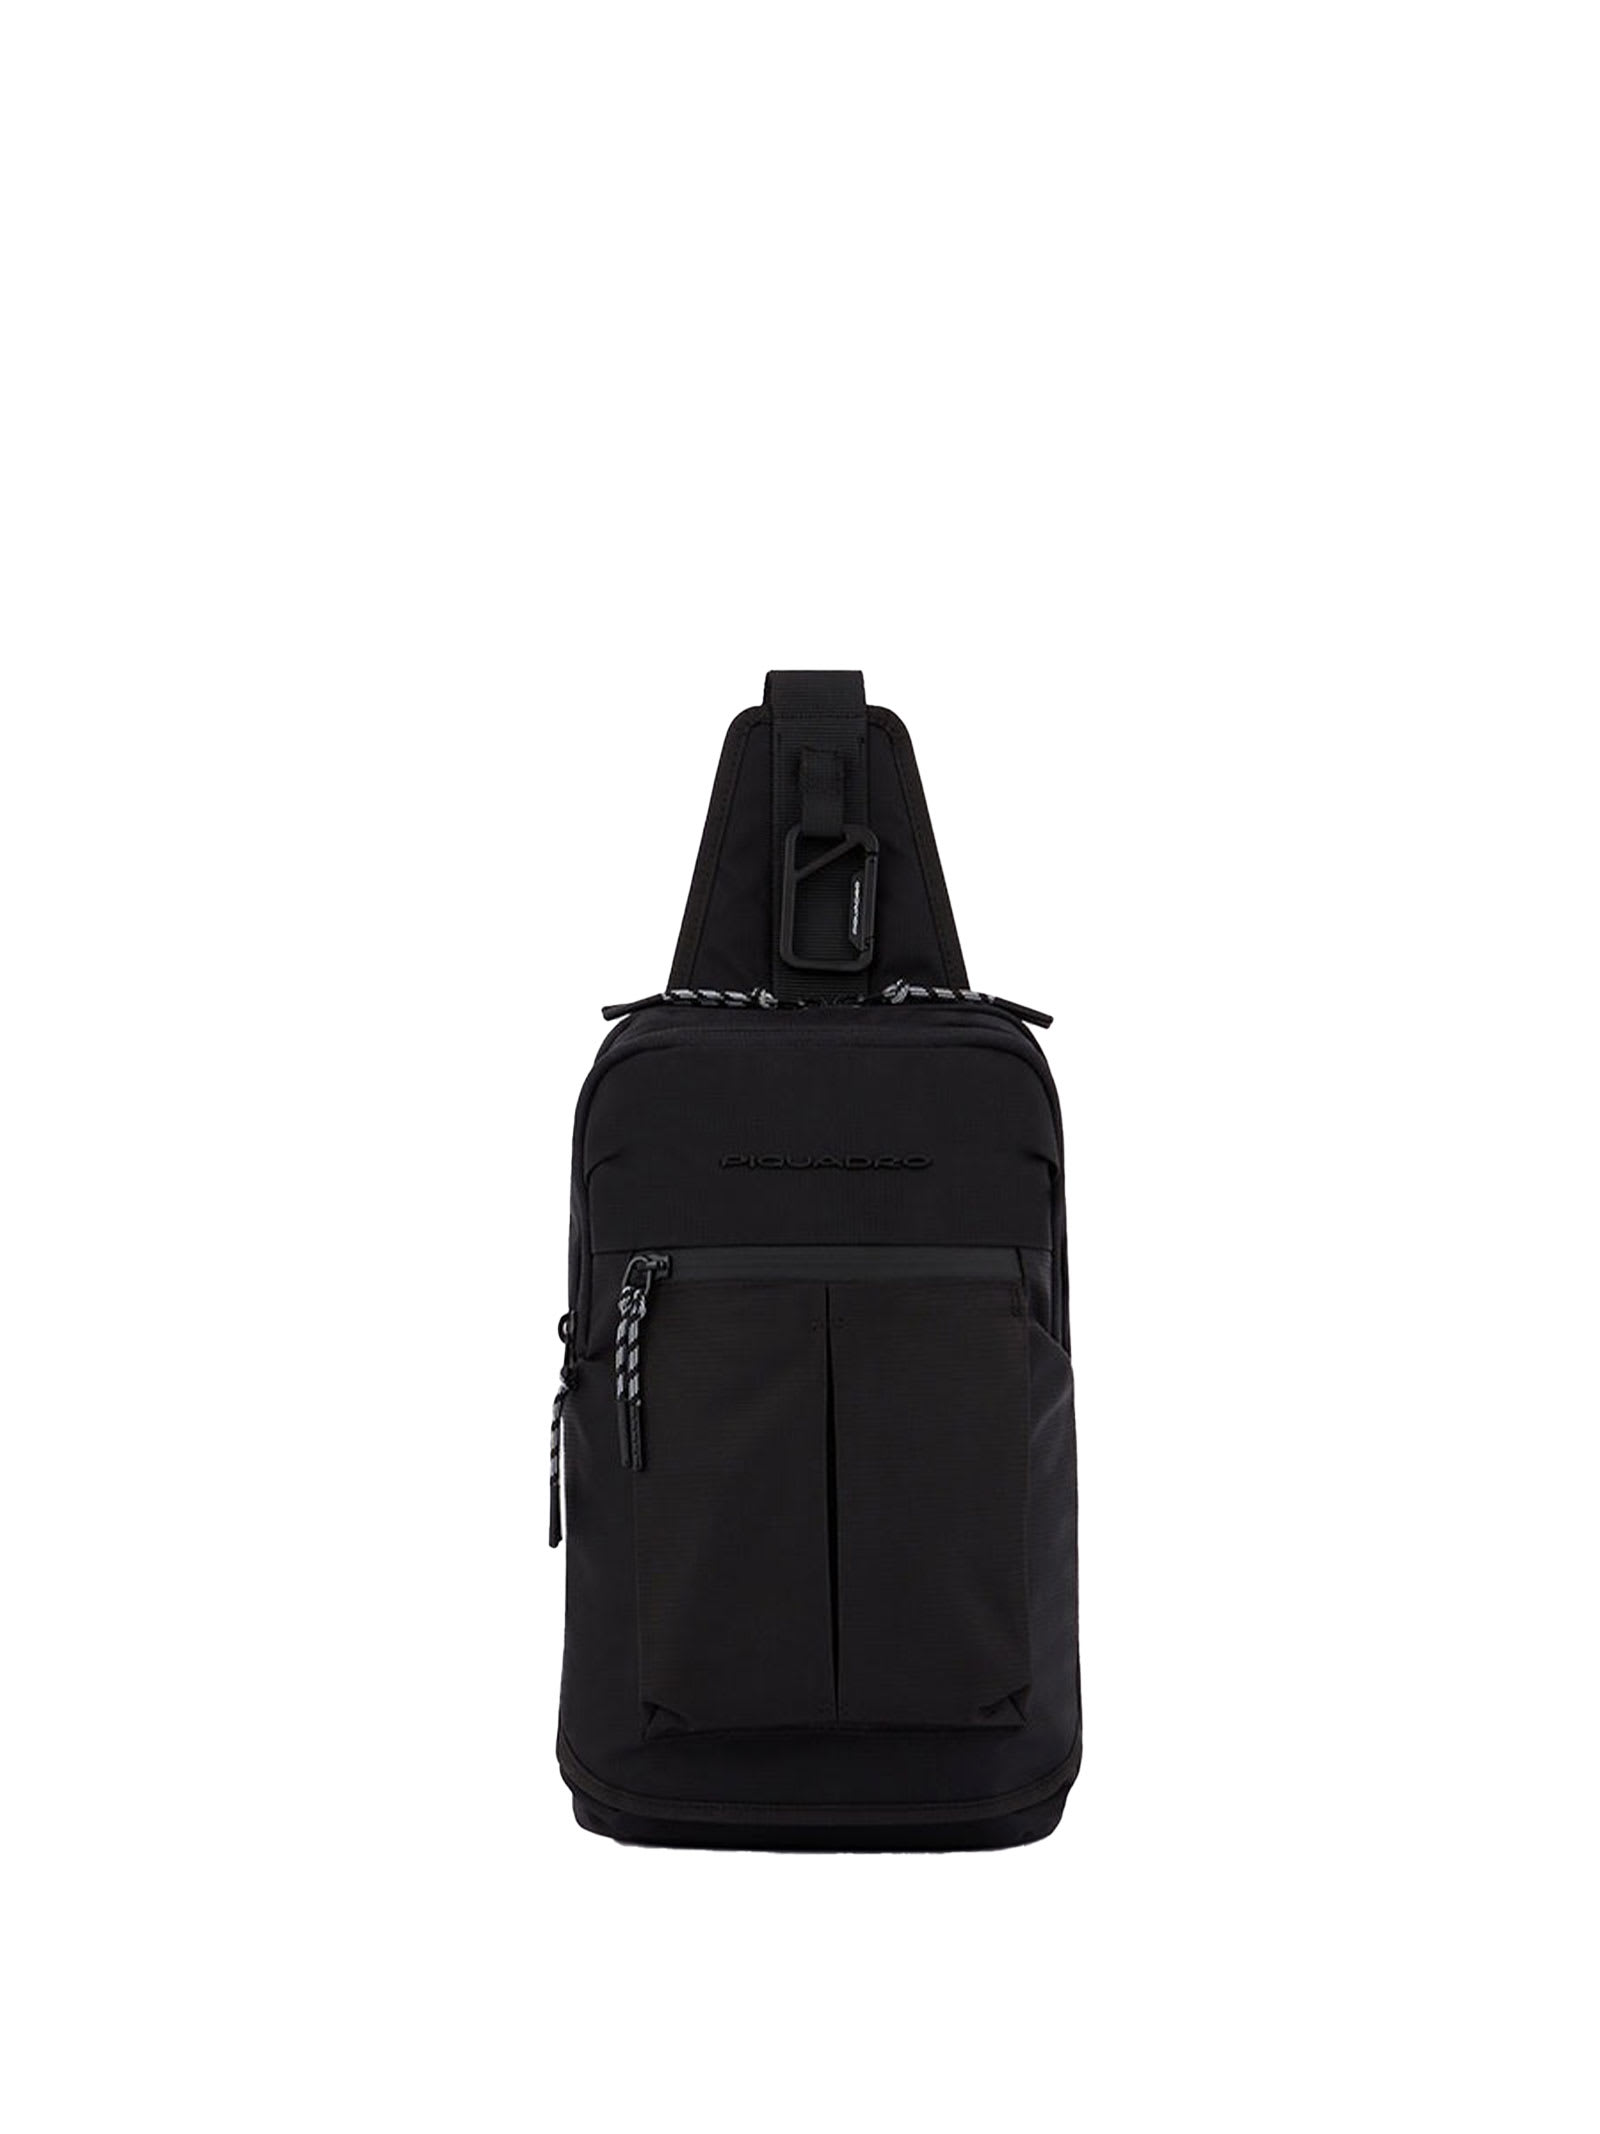 One-shoulder Backpack Black